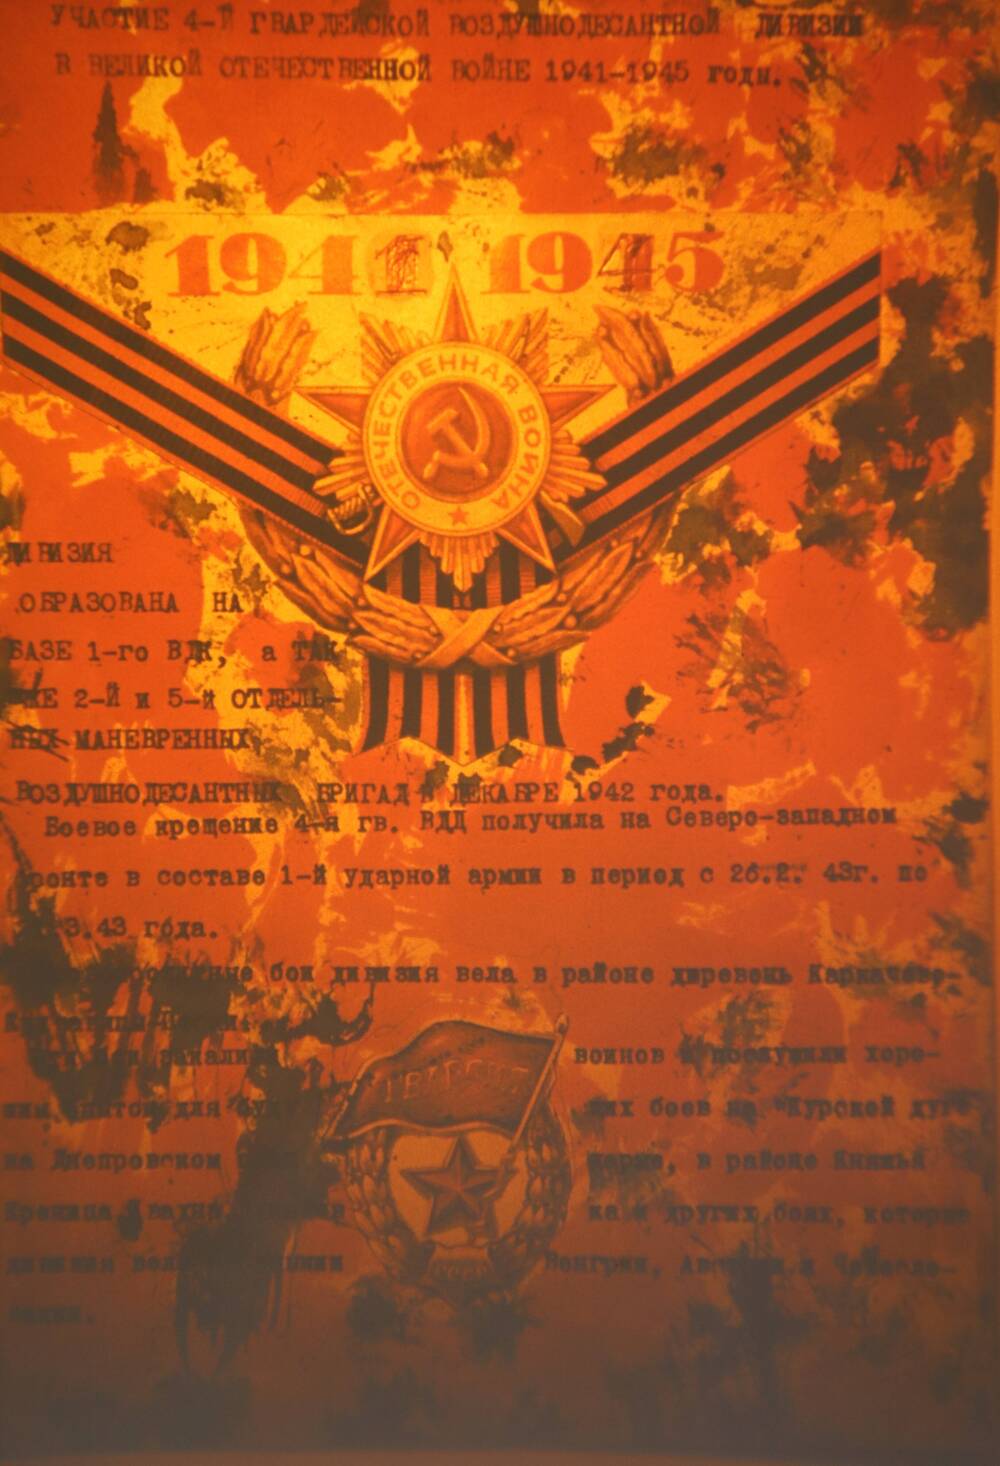 Слайд пластмассовый, где в набранном тексте показано участие 4-й воздушно-десантной дивизии в Великой Отечественной войне 1941-1945 годы. Фон слайда красный.